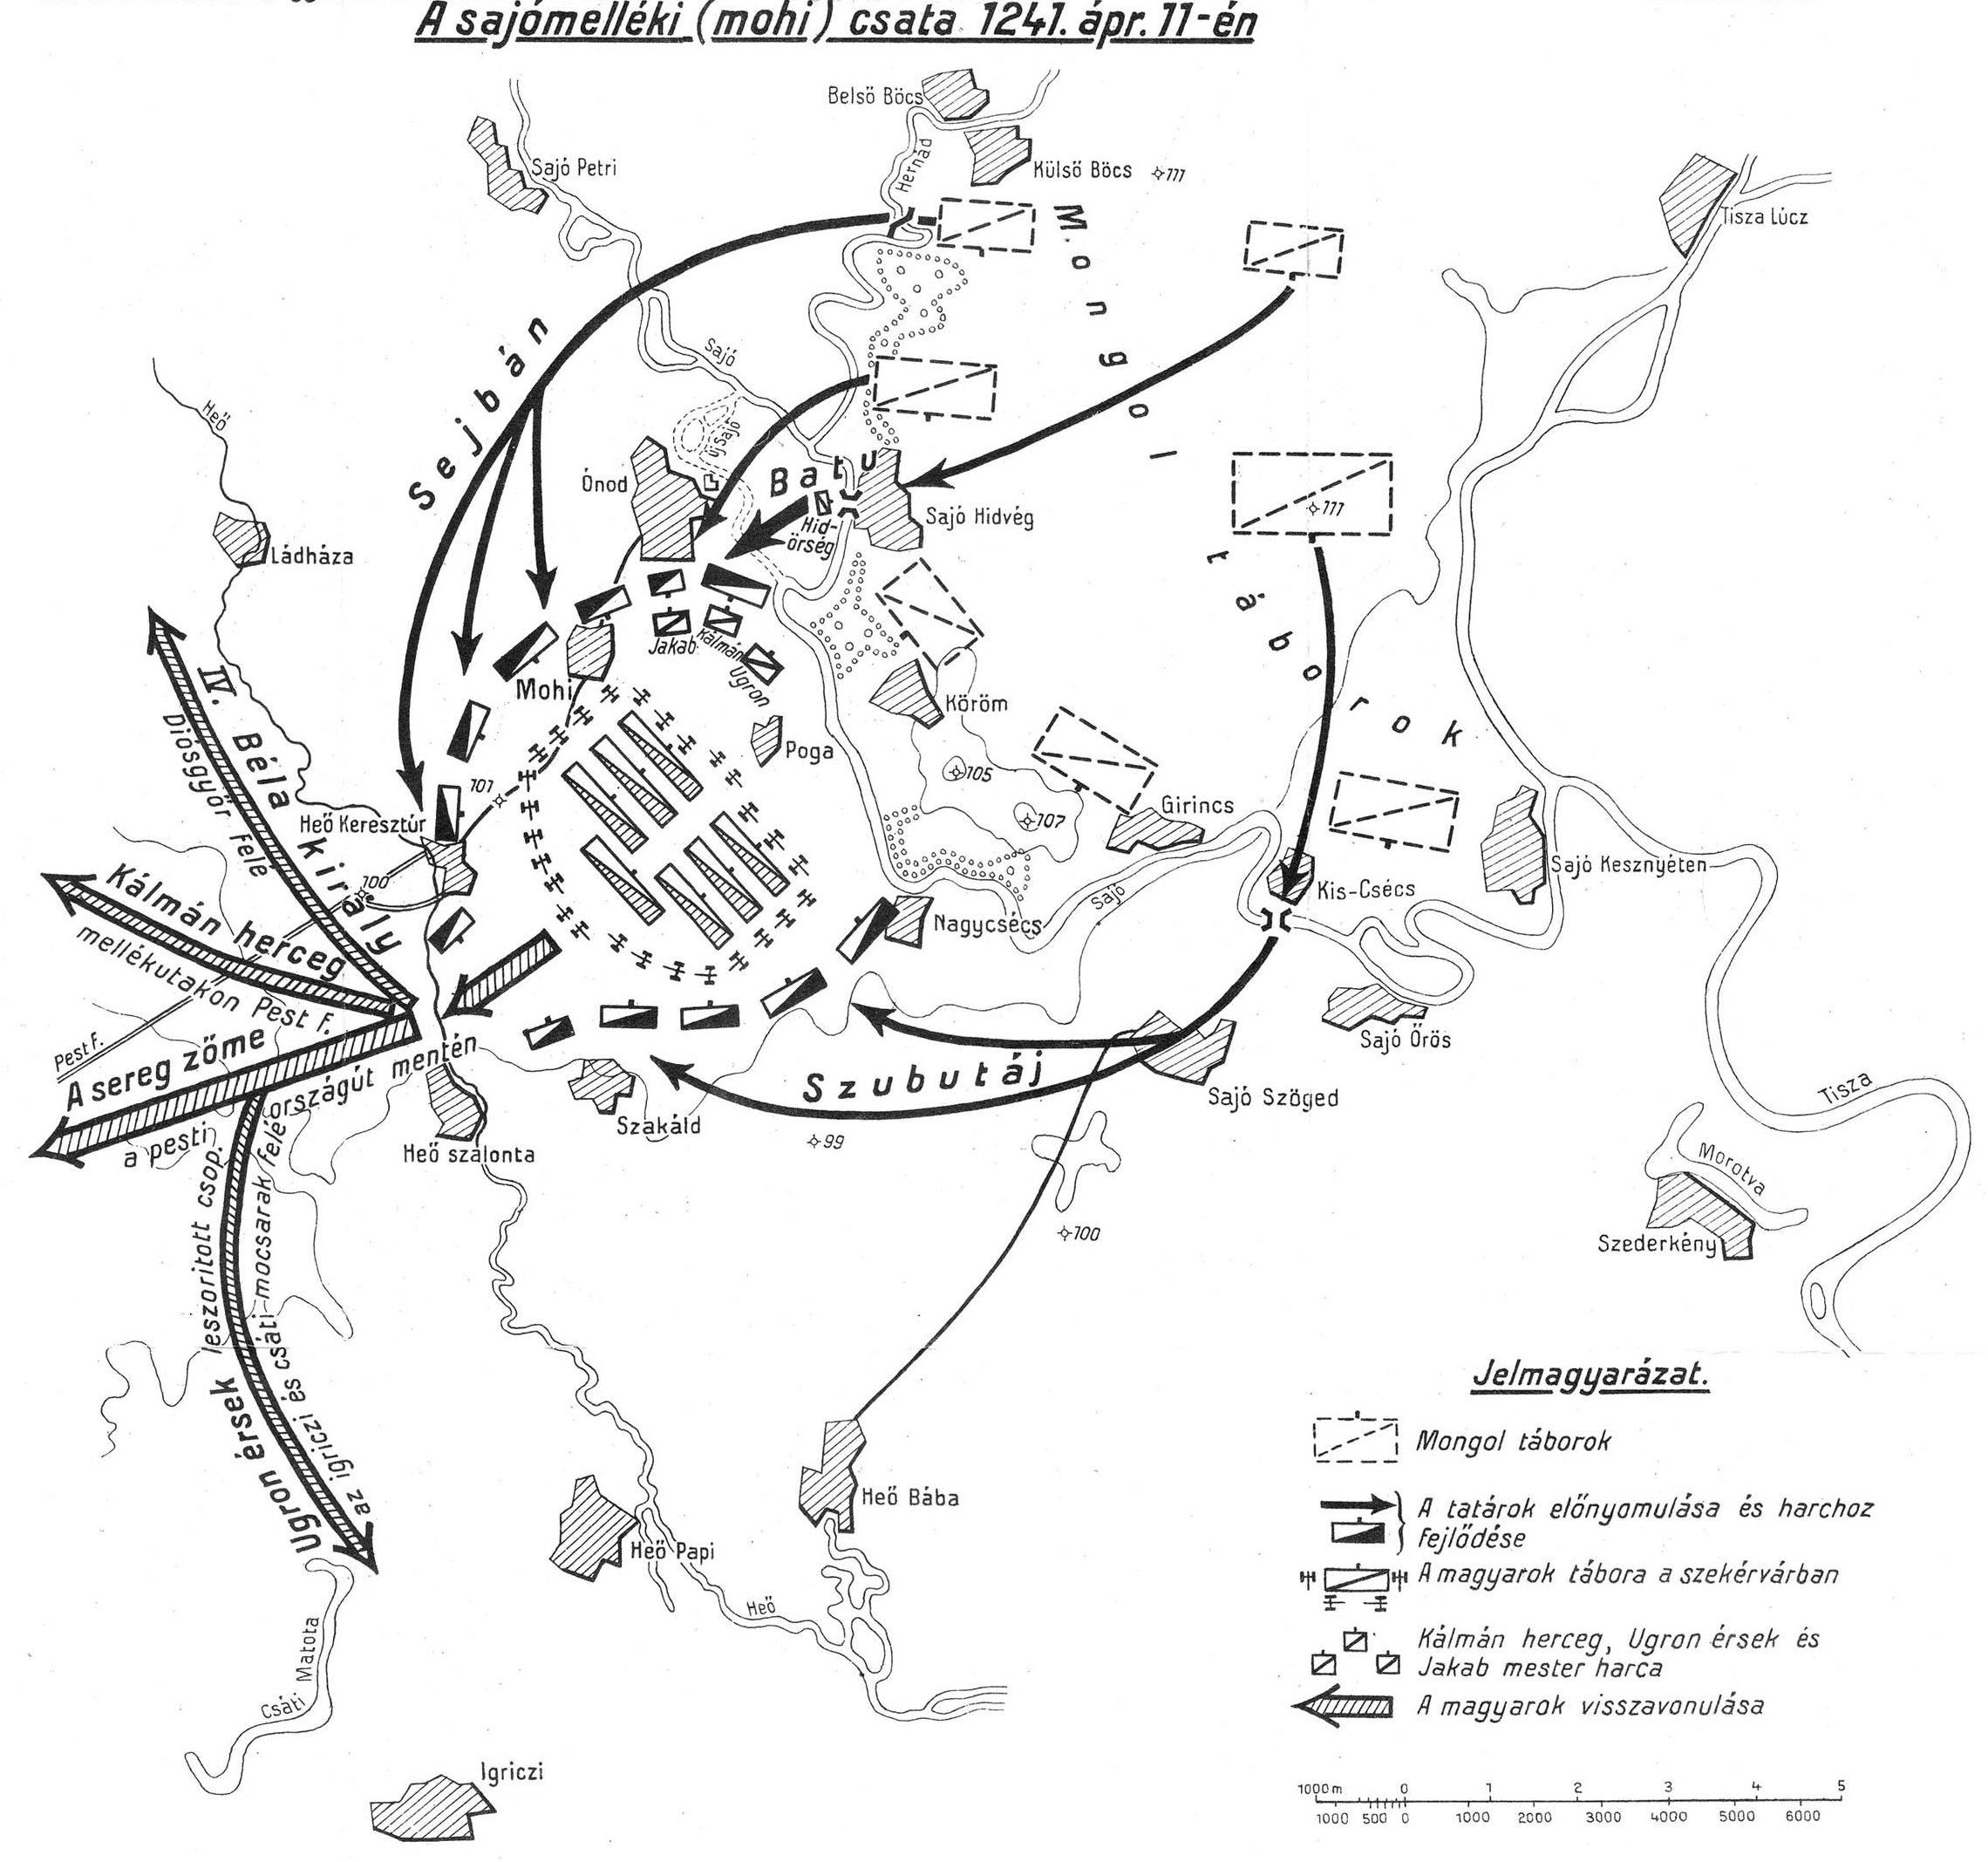 A muhi csata 1241. április 11-én